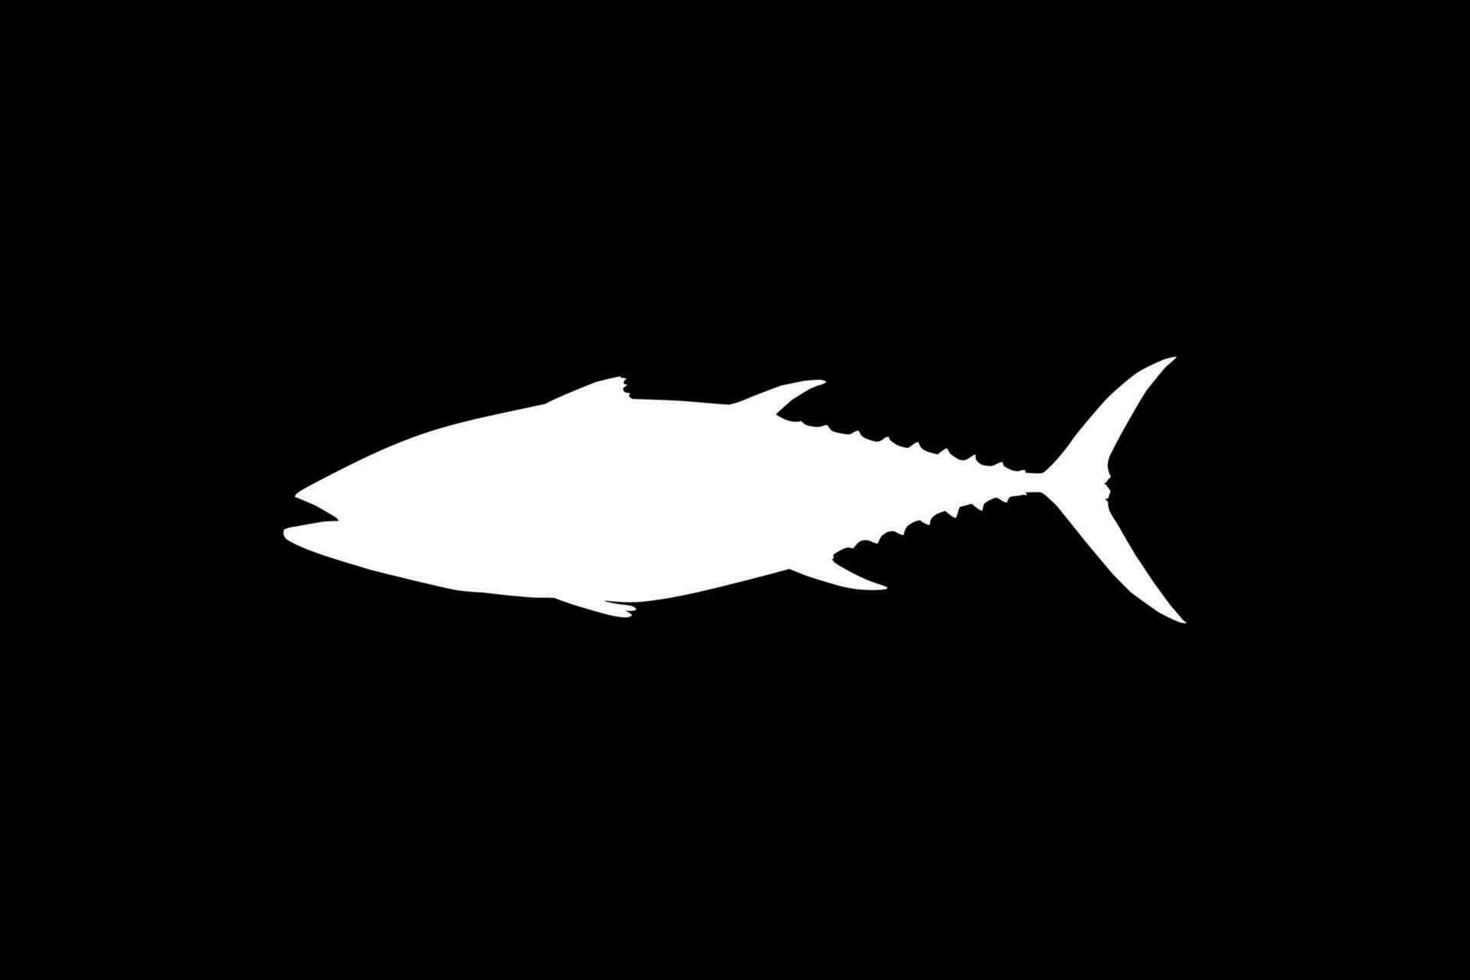 Thunfisch Fisch Silhouette, können verwenden zum Logo Typ, Kunst Illustration, Piktogramm, Webseite oder Grafik Design Element. Vektor Illustration